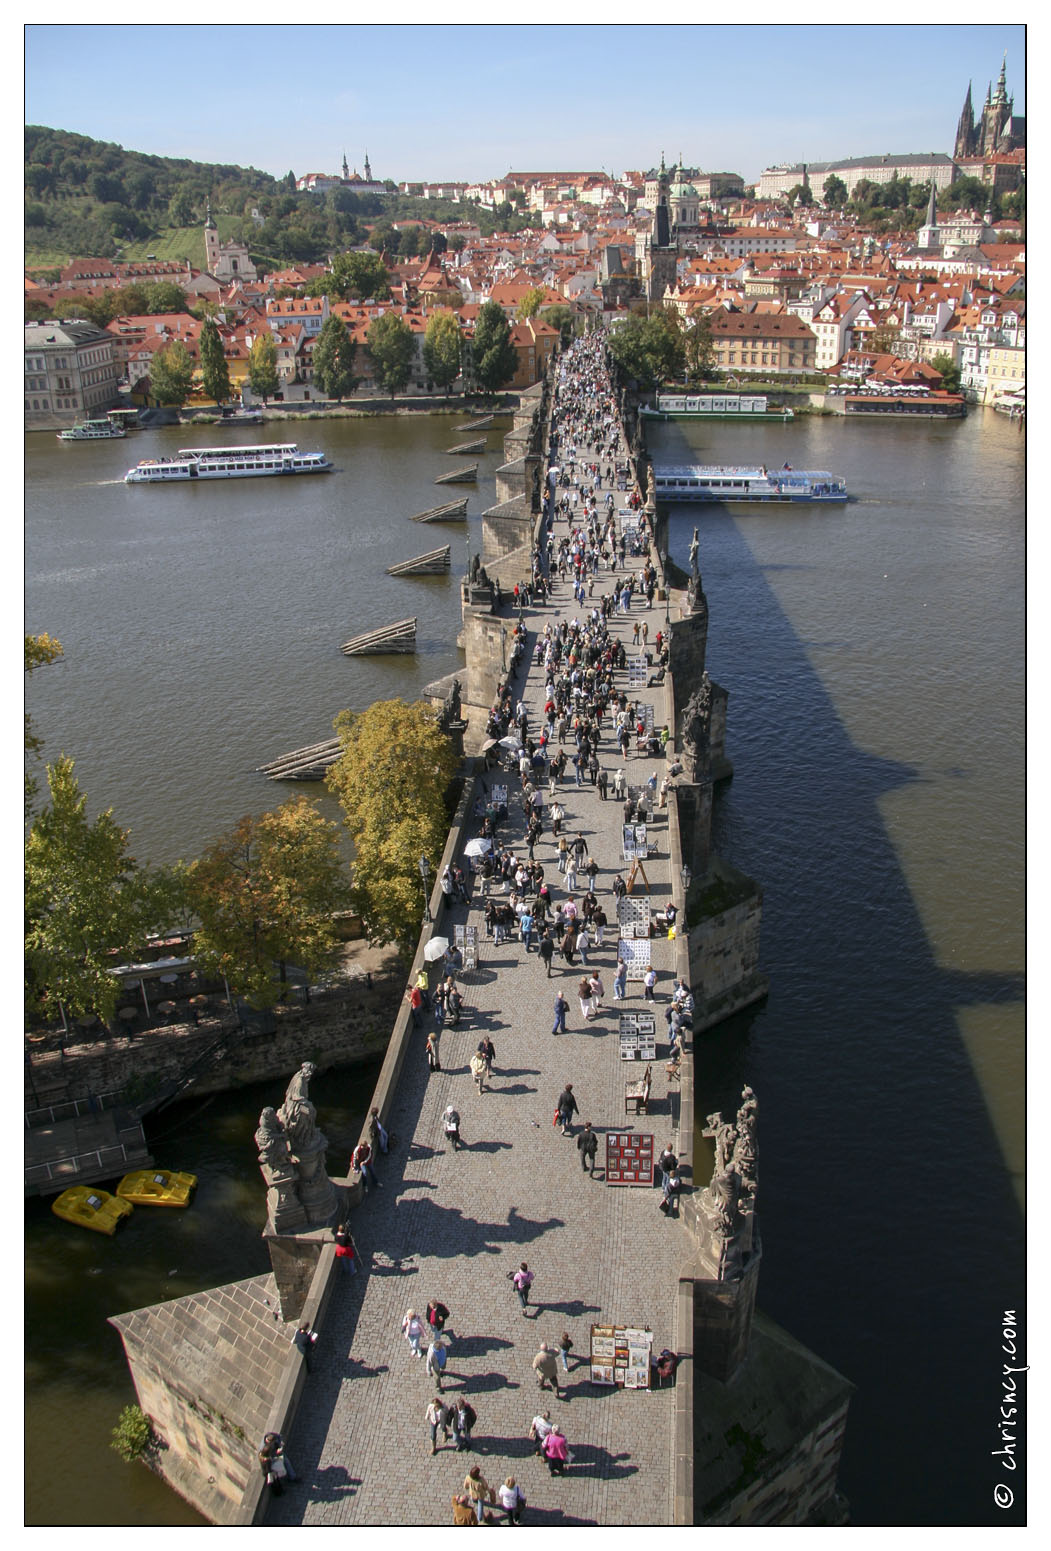 20070920-26_3491-Prague_vue_du_pont_charles.jpg